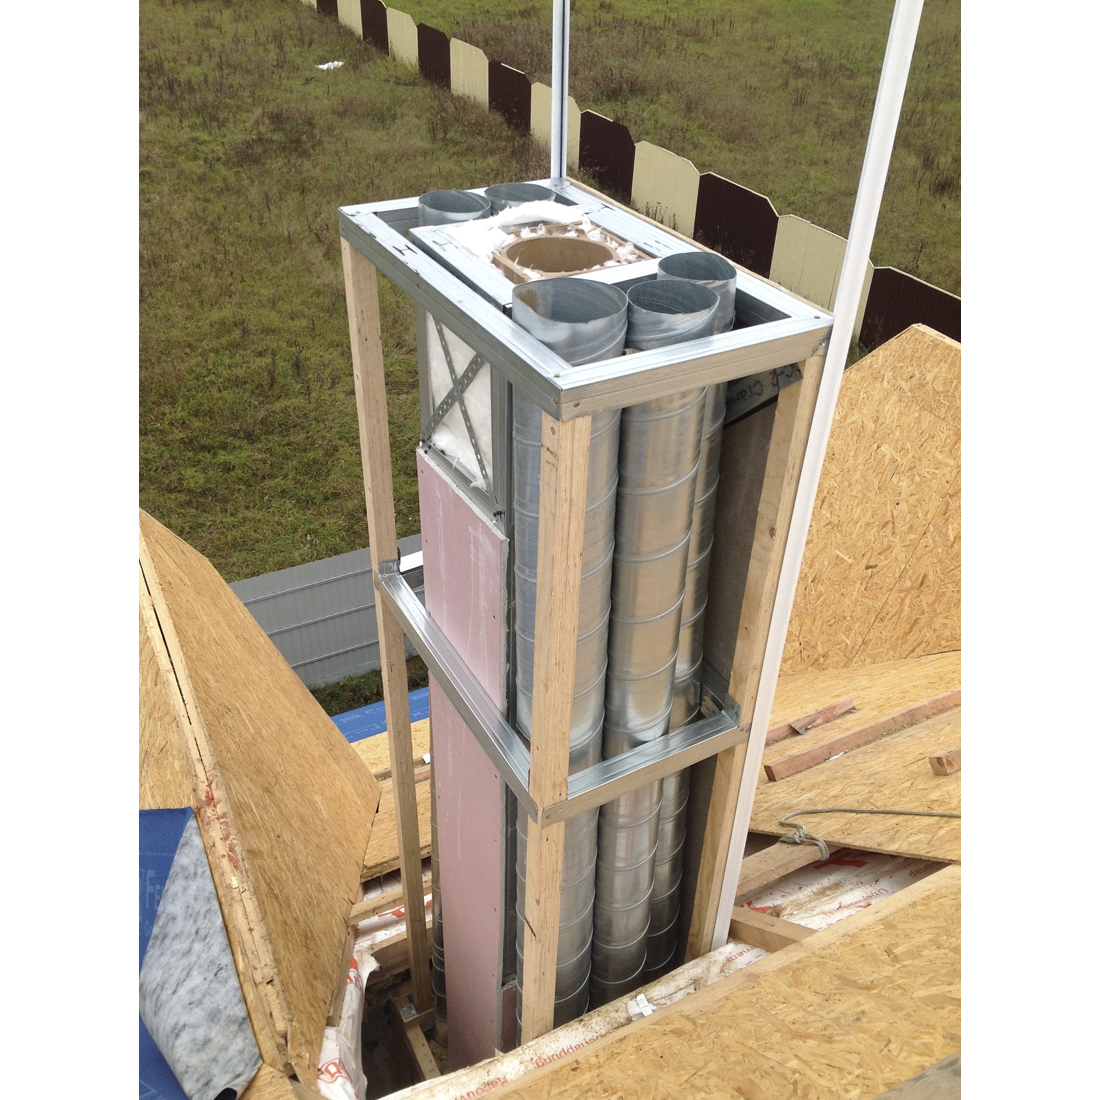 керамические дымоходы effe2 ultra для газового атмосферного котла, монтаж в нише, дымоход Effe2 и вентиляционные шахты